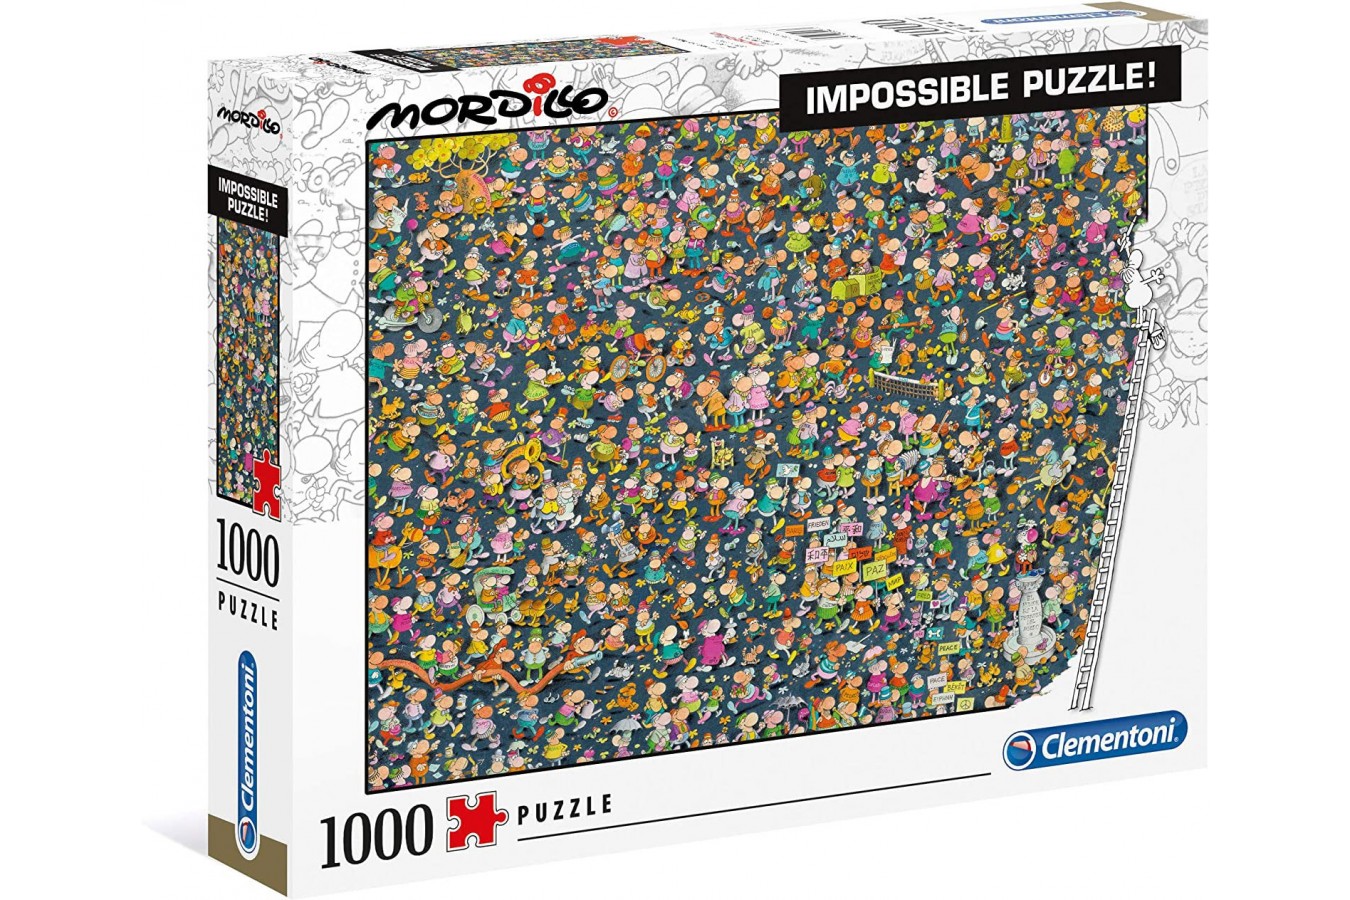 Puzzle 1000 piese dificile Clementoni - Impossible Puzzle - Mordillo (Clementoni-39550)